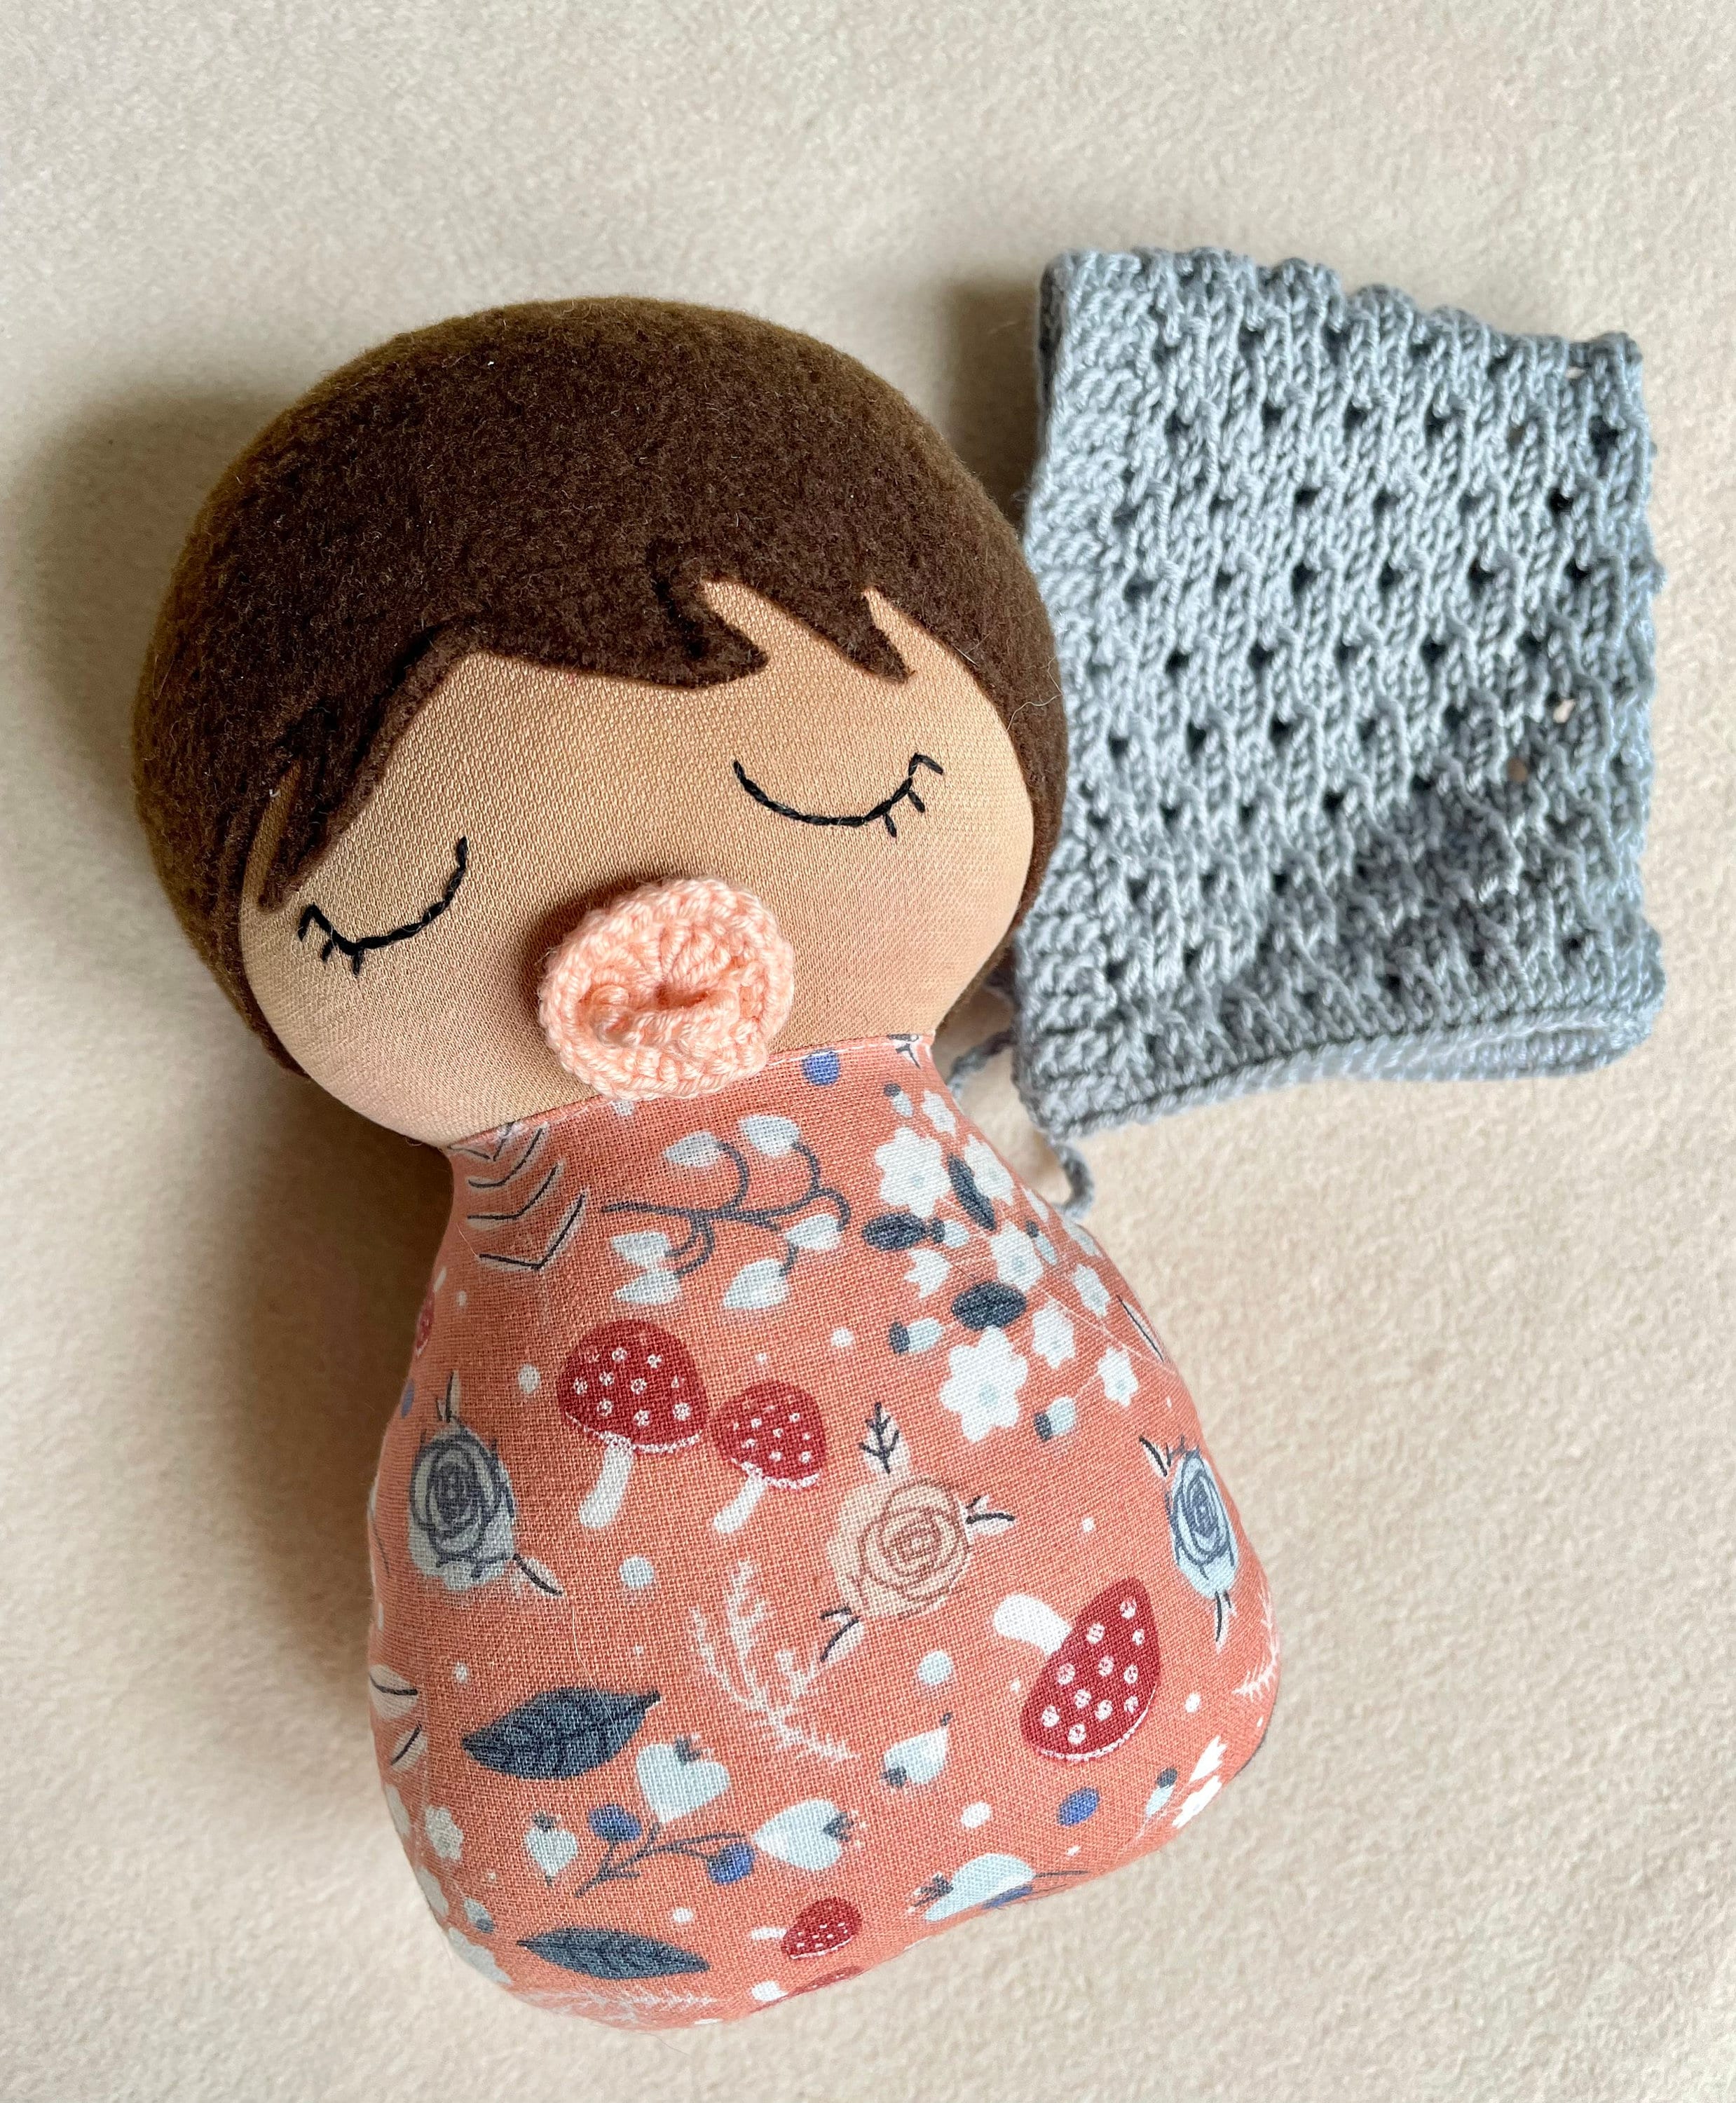  Muñeca de Trapo Personalizada - Muñecas de Trapo Vestido  Terciopelo, Regalo muñeca Trapo Bebe con su Nombre, tamaño 25 cm. en Azul o  Rosa - Muñeca Bebe 1 año y más (